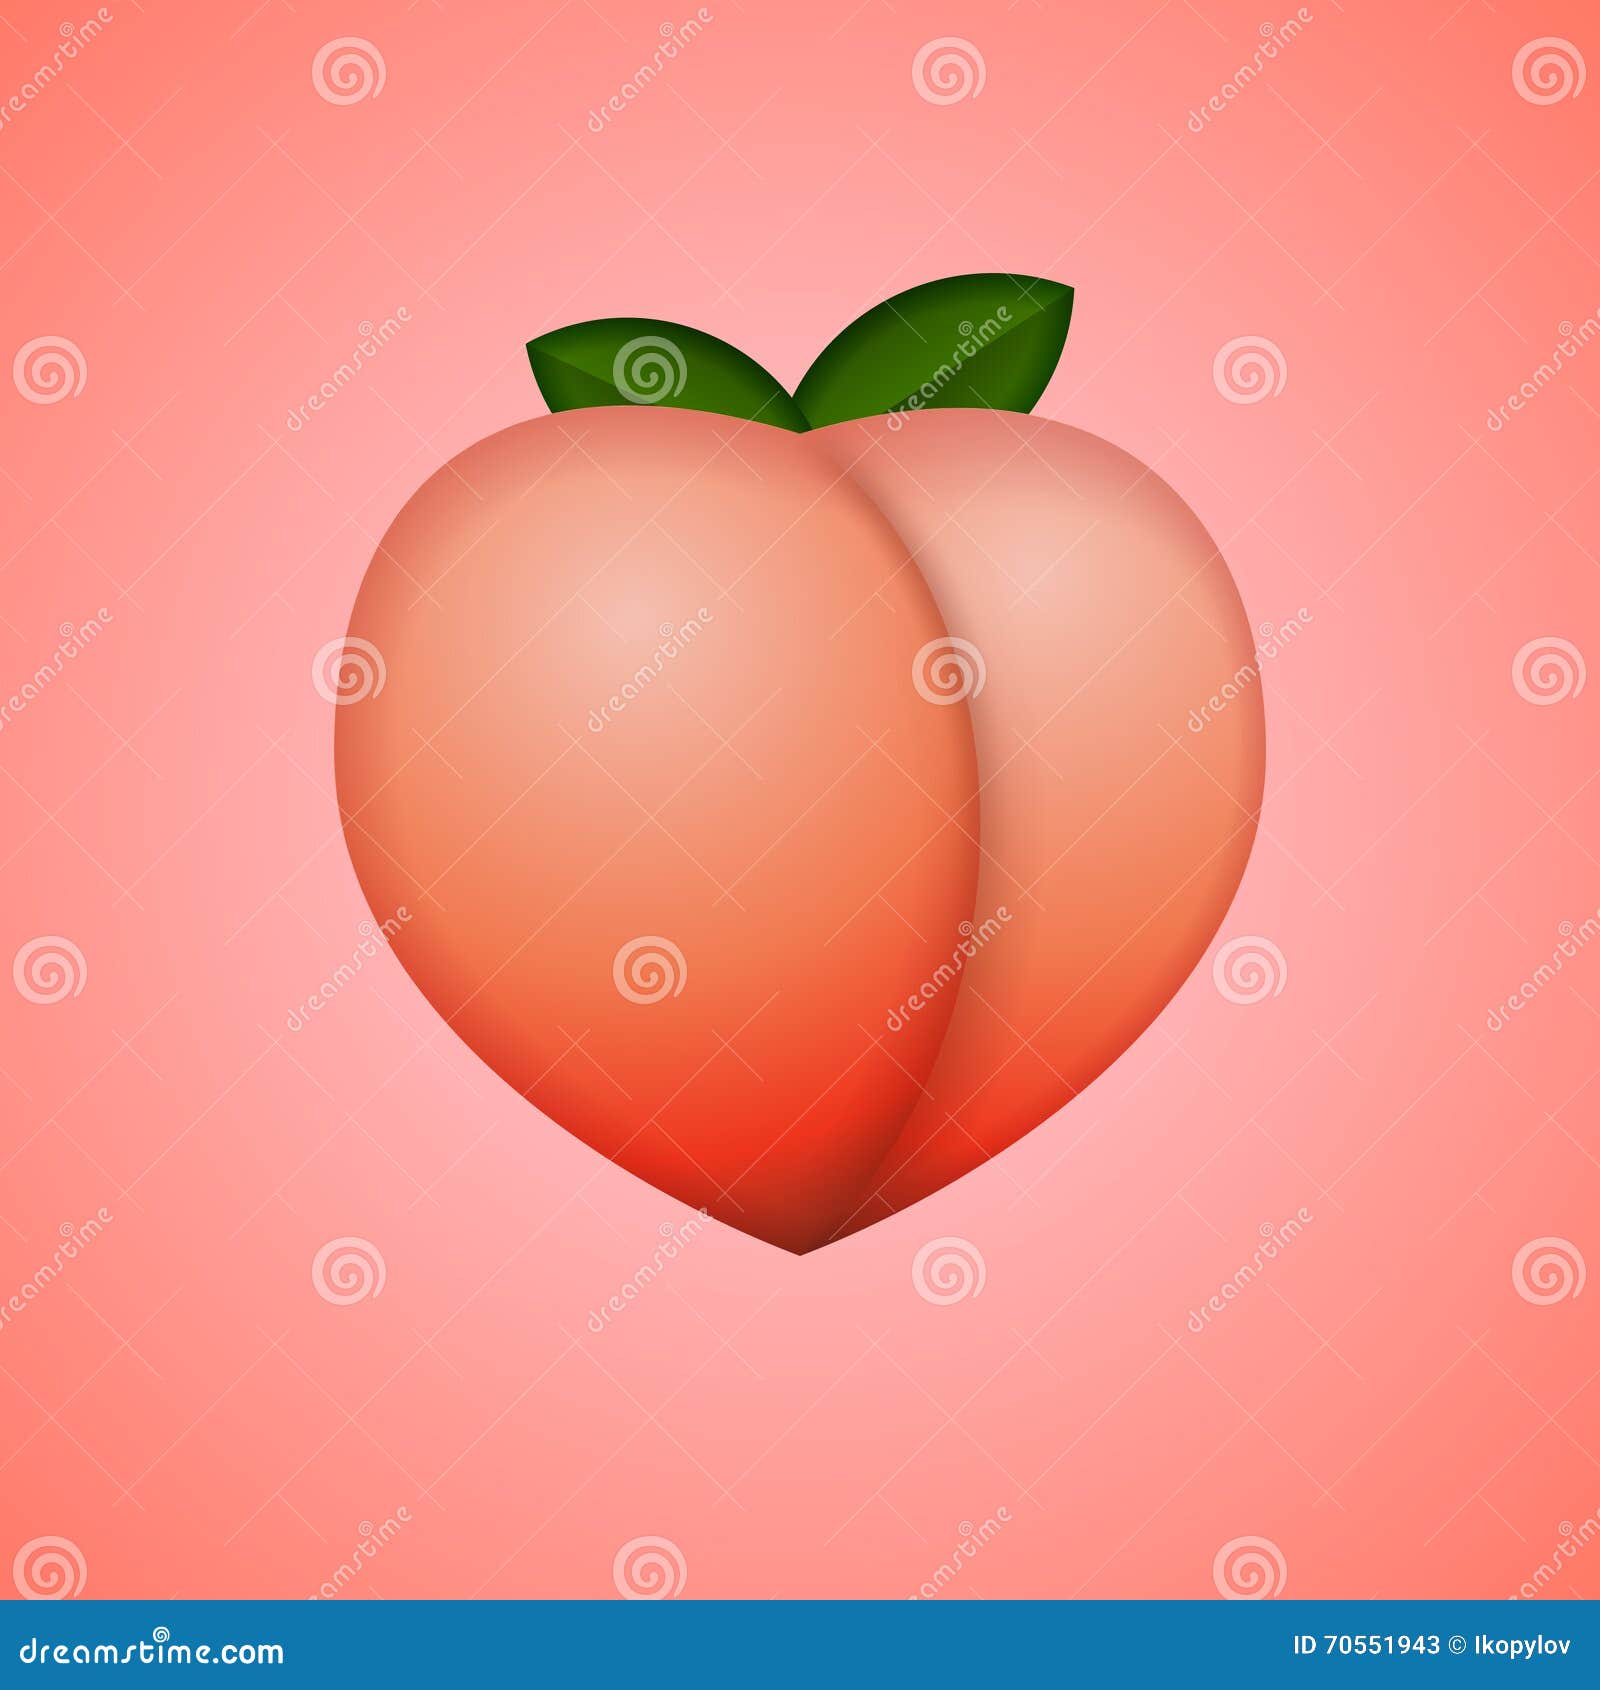 heart-d peach, whole fruit